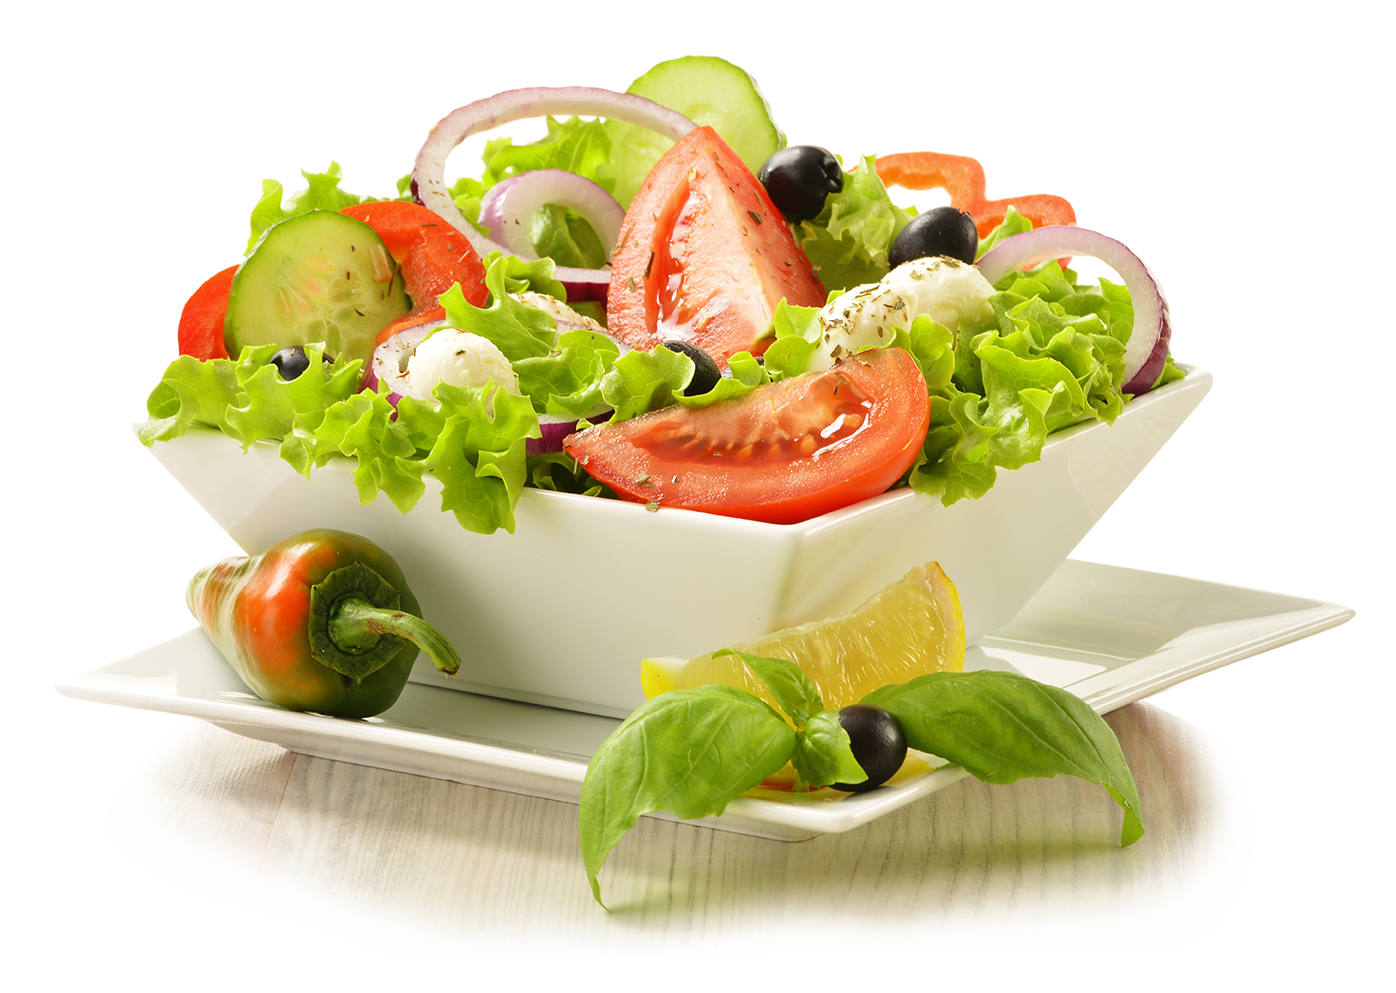 Salad HD PNG - 118980